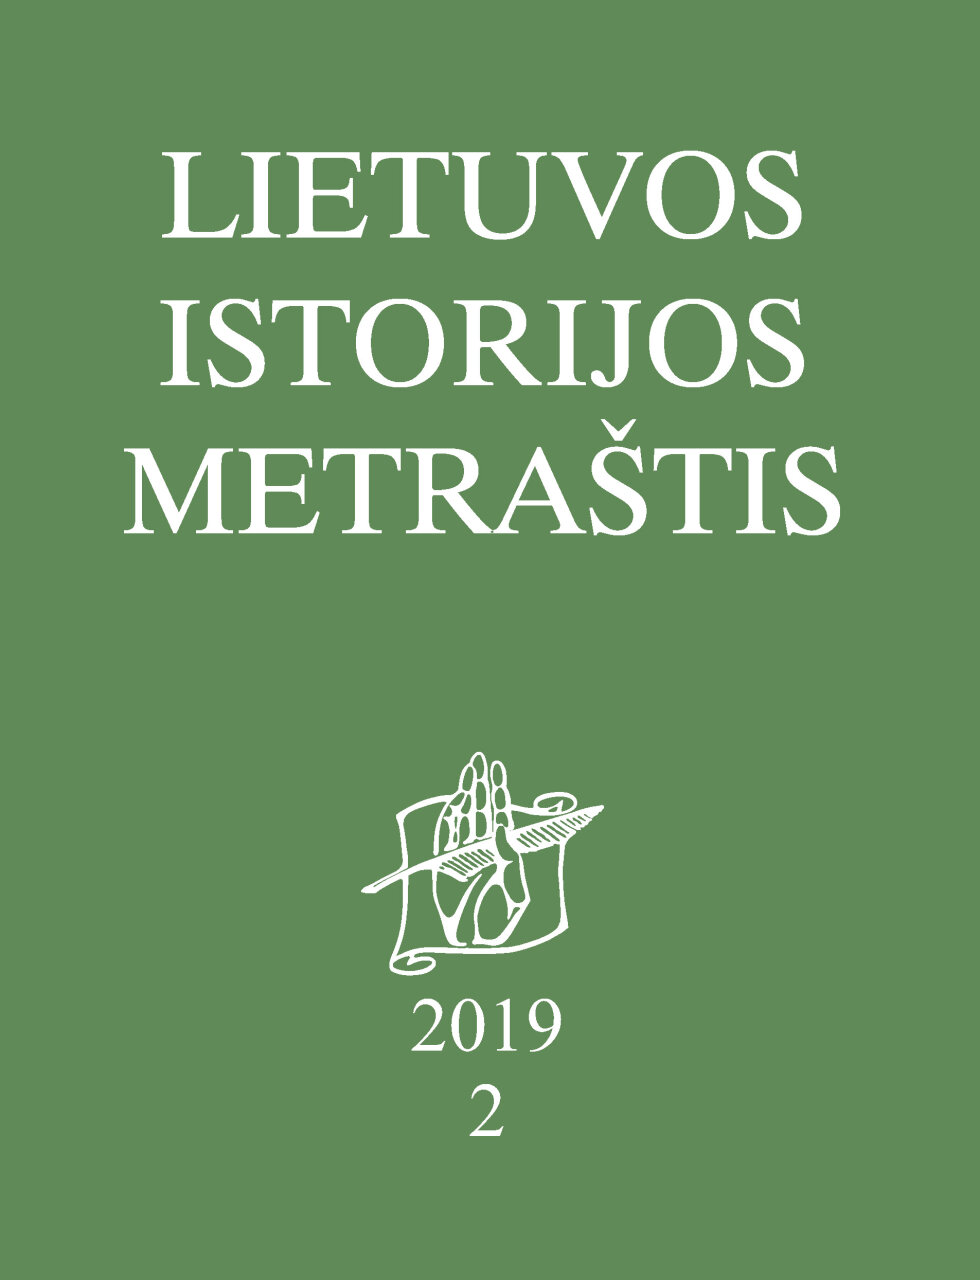 Lietuvos istorijos metraštis 2019 metai 2